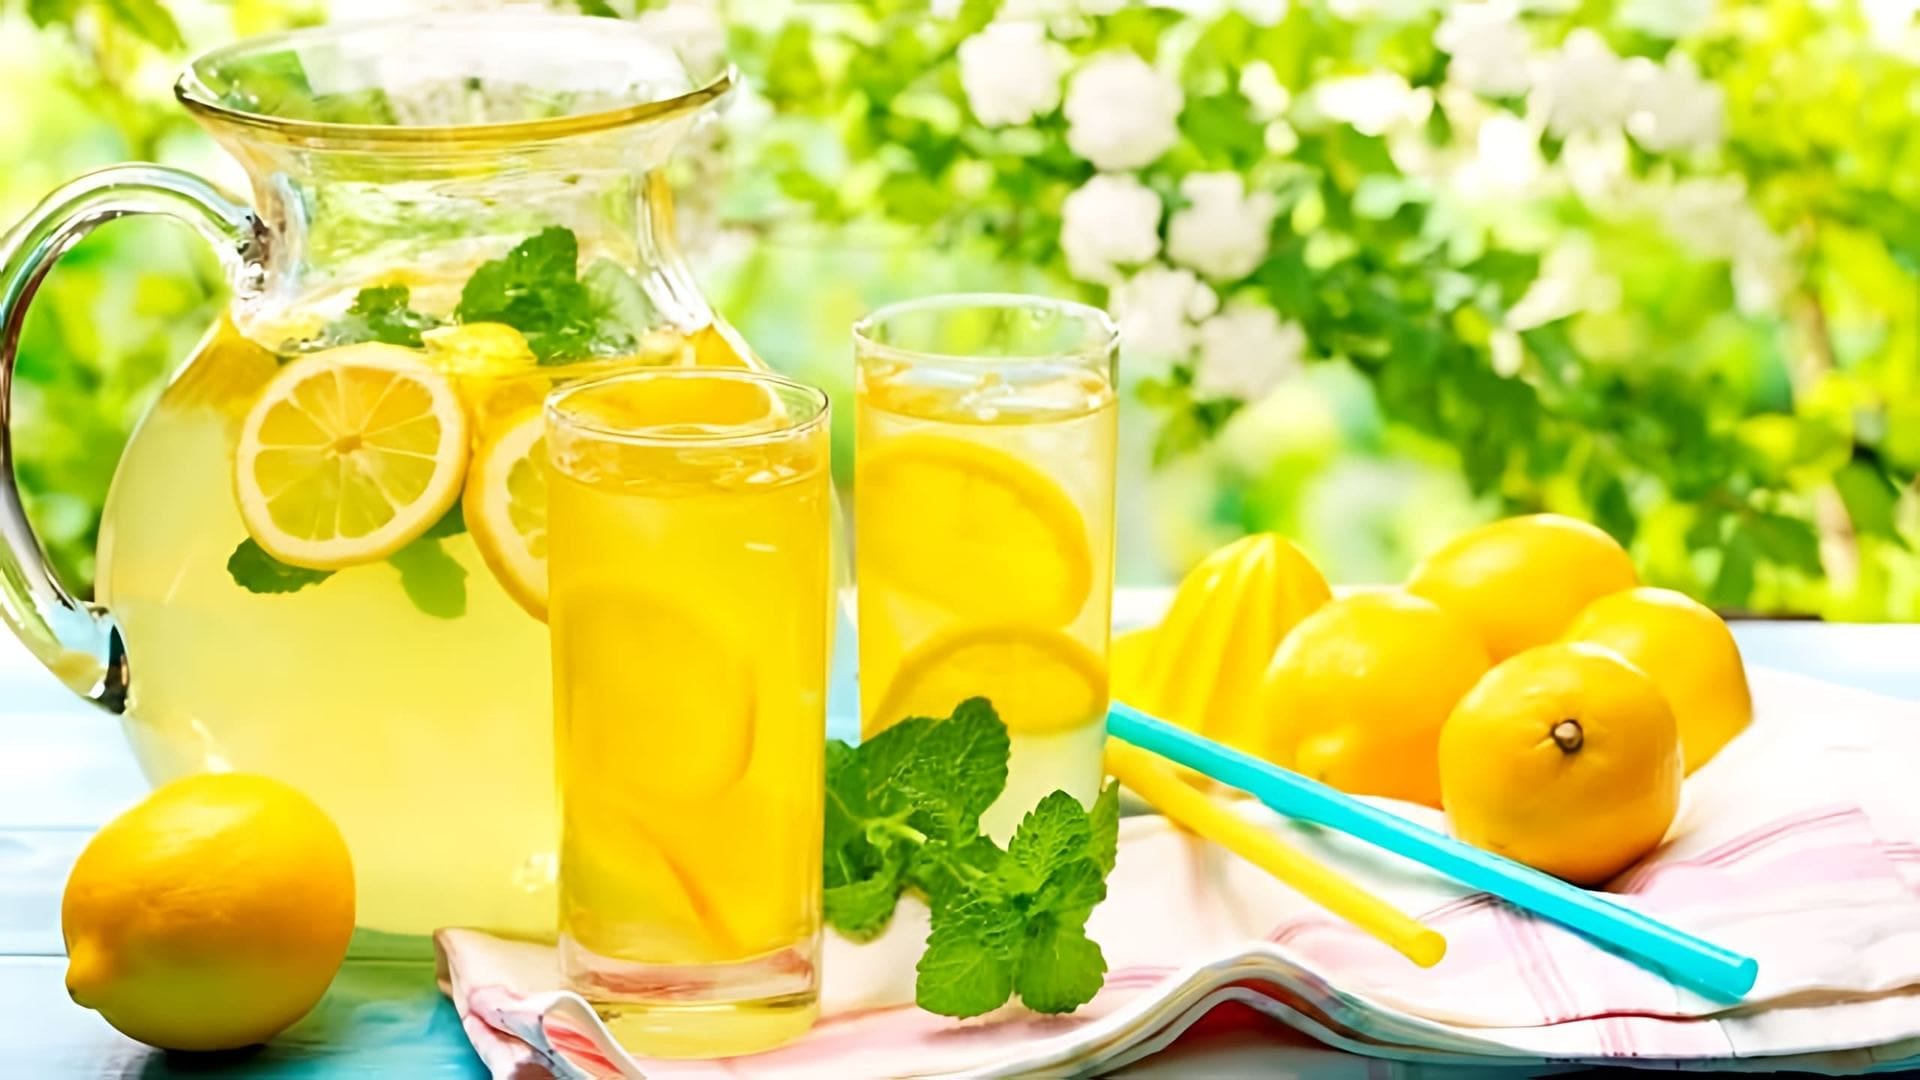 В этом видео демонстрируется рецепт приготовления турецкого лимонада